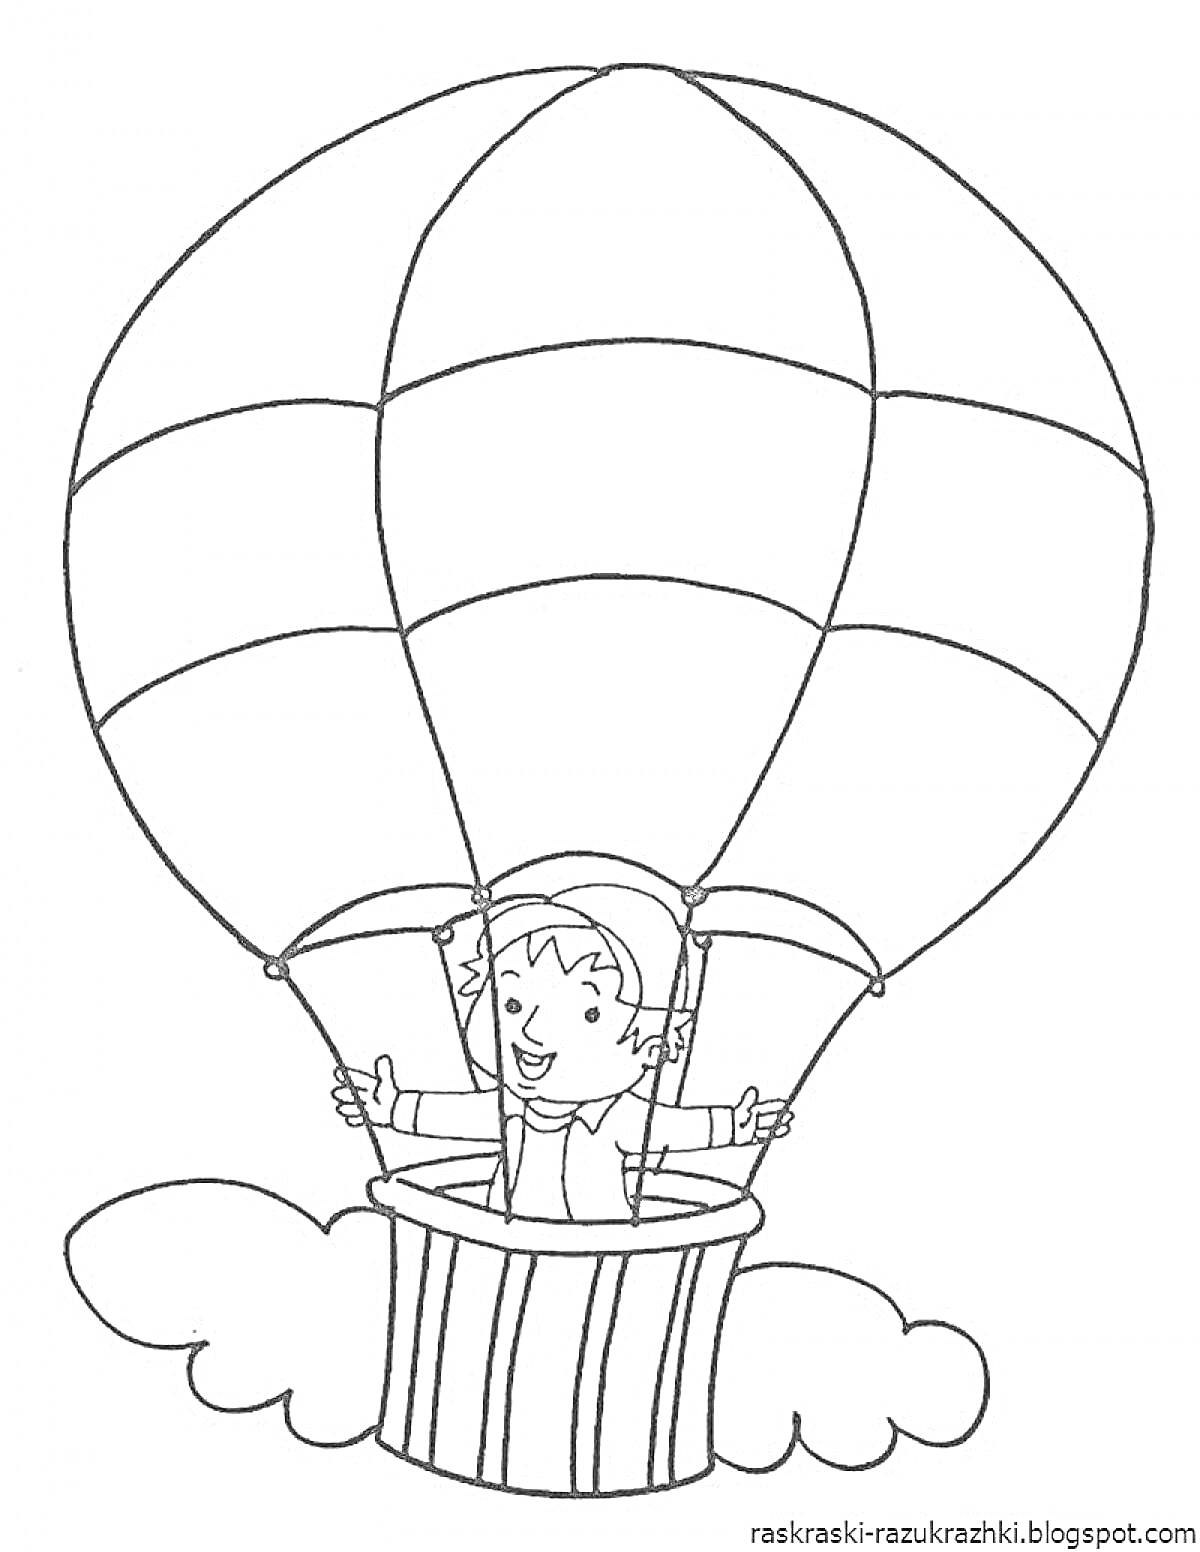 Раскраска Воздушный шар с мальчиком и облаками